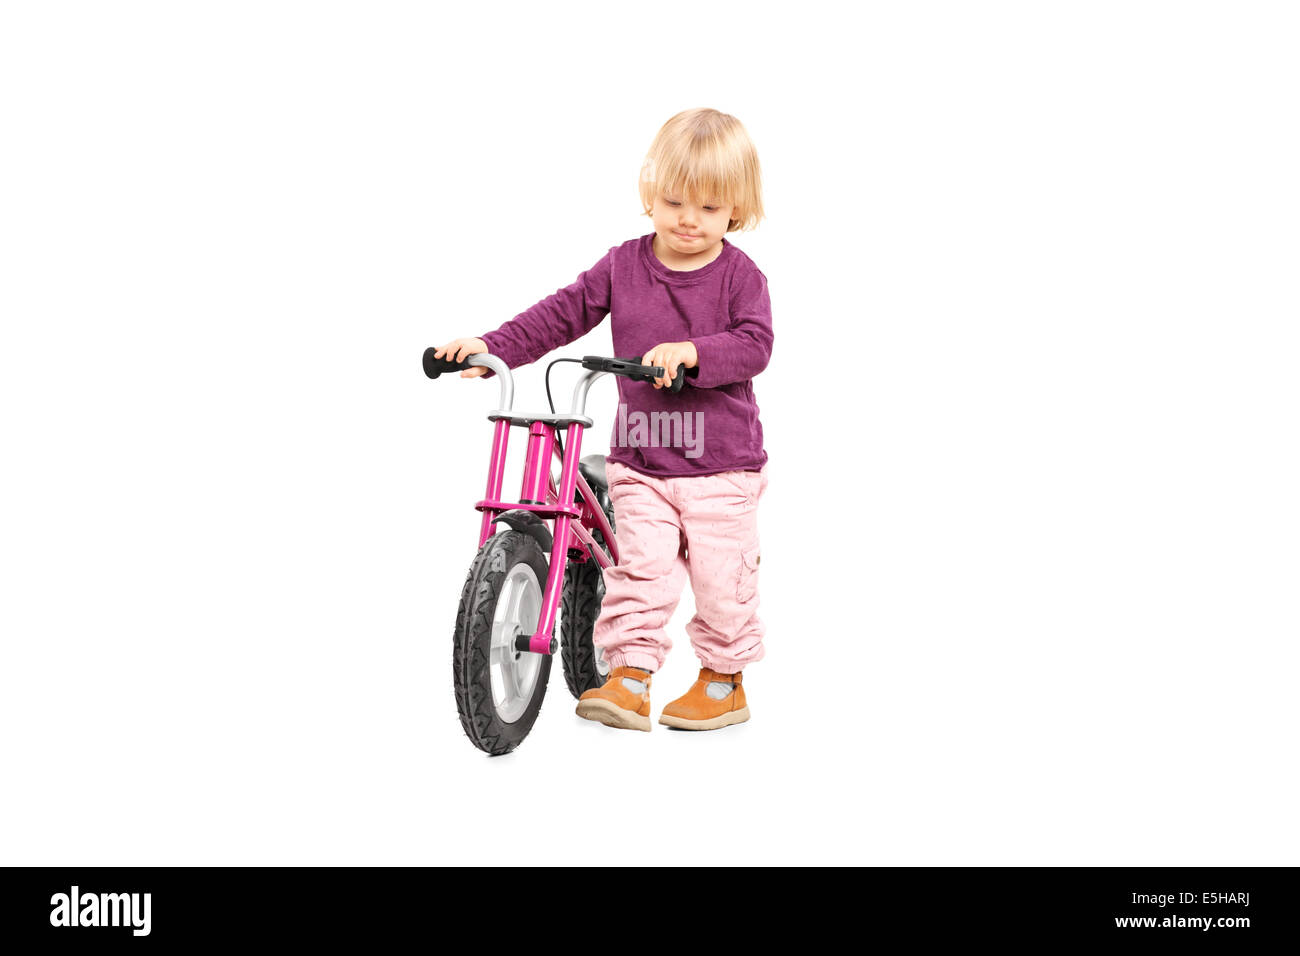 pushing bike for baby